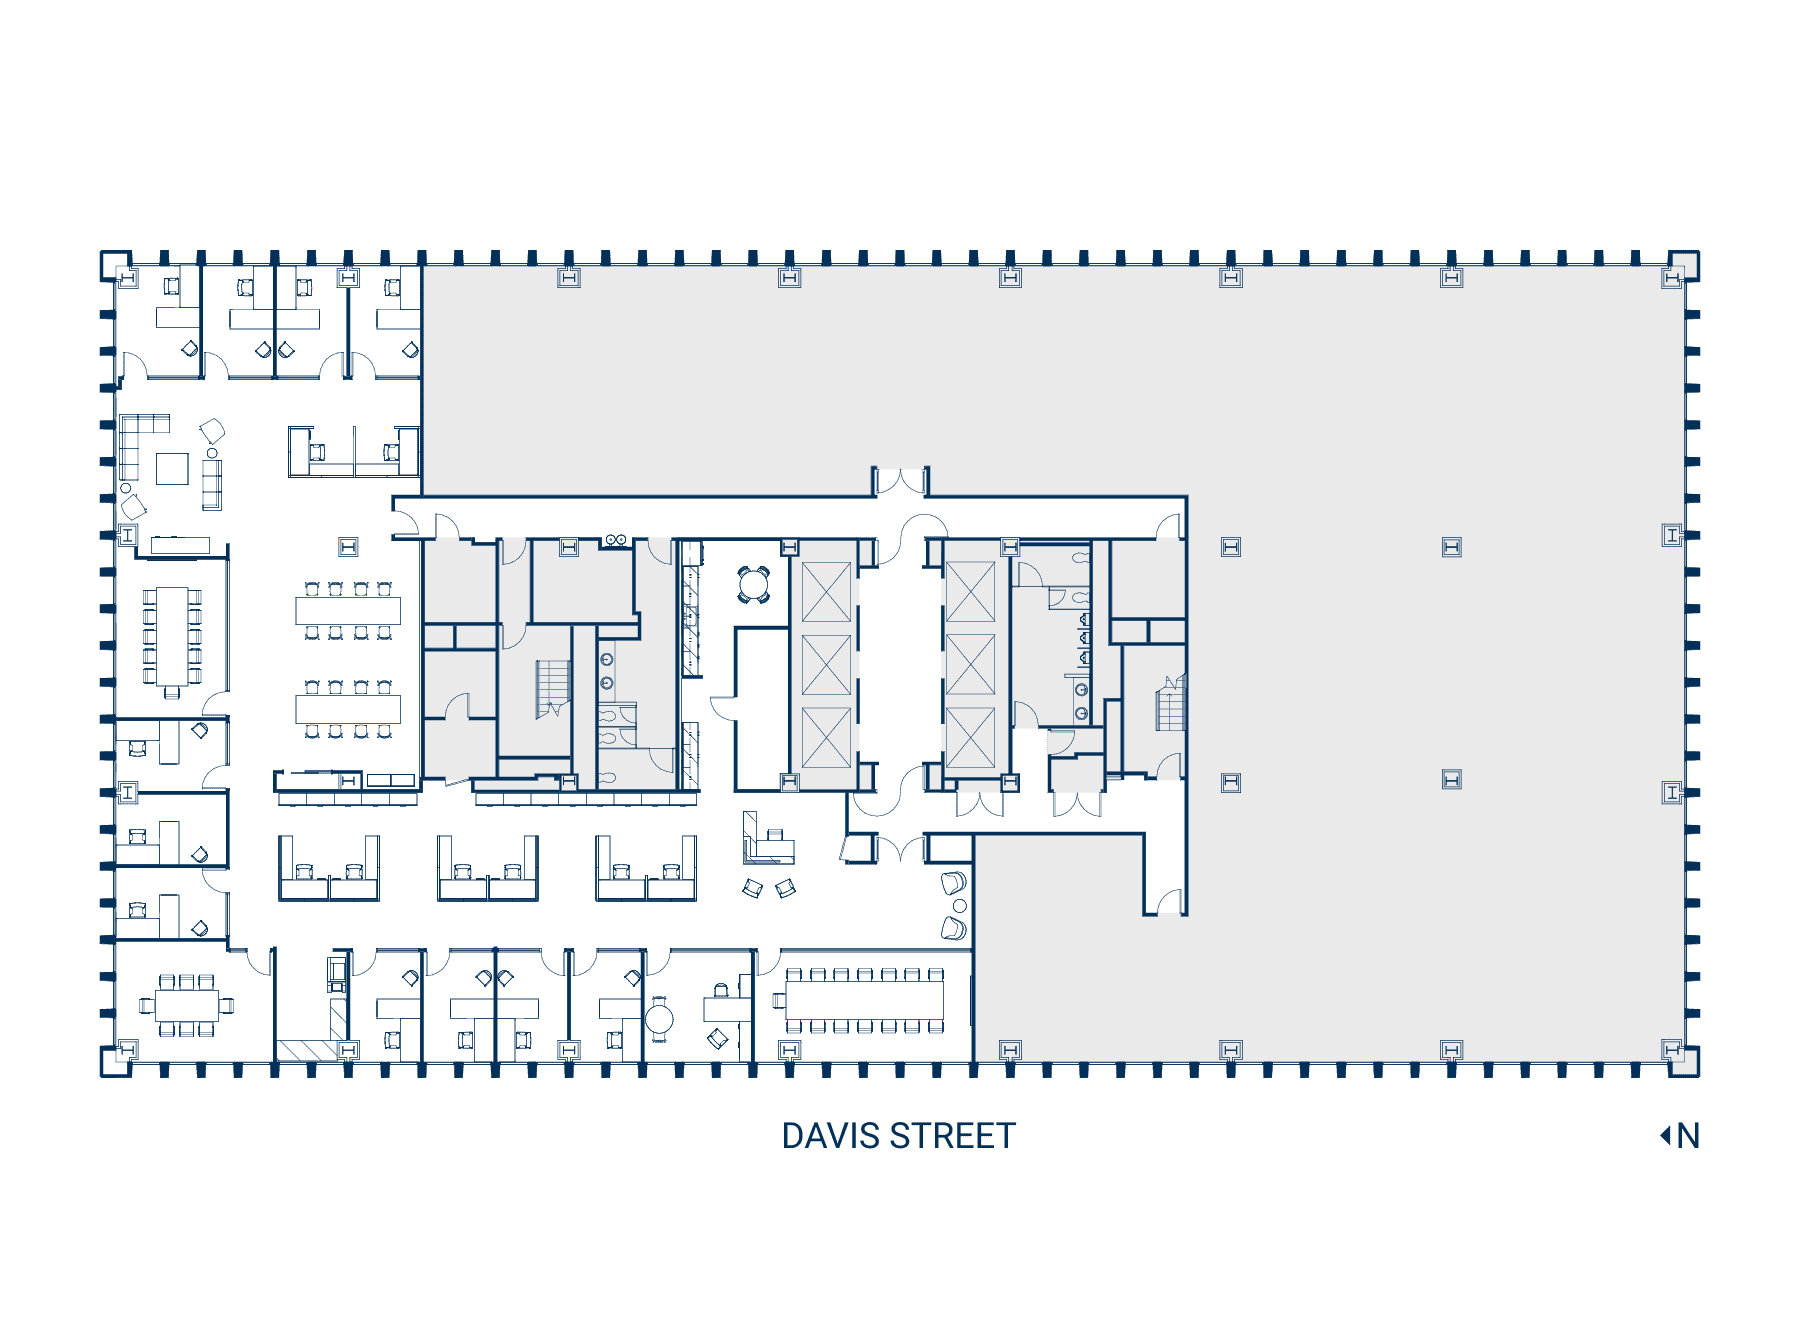 Floor 30 Suite 3050 Floor Plan - Hypothetical Private Office (Web)